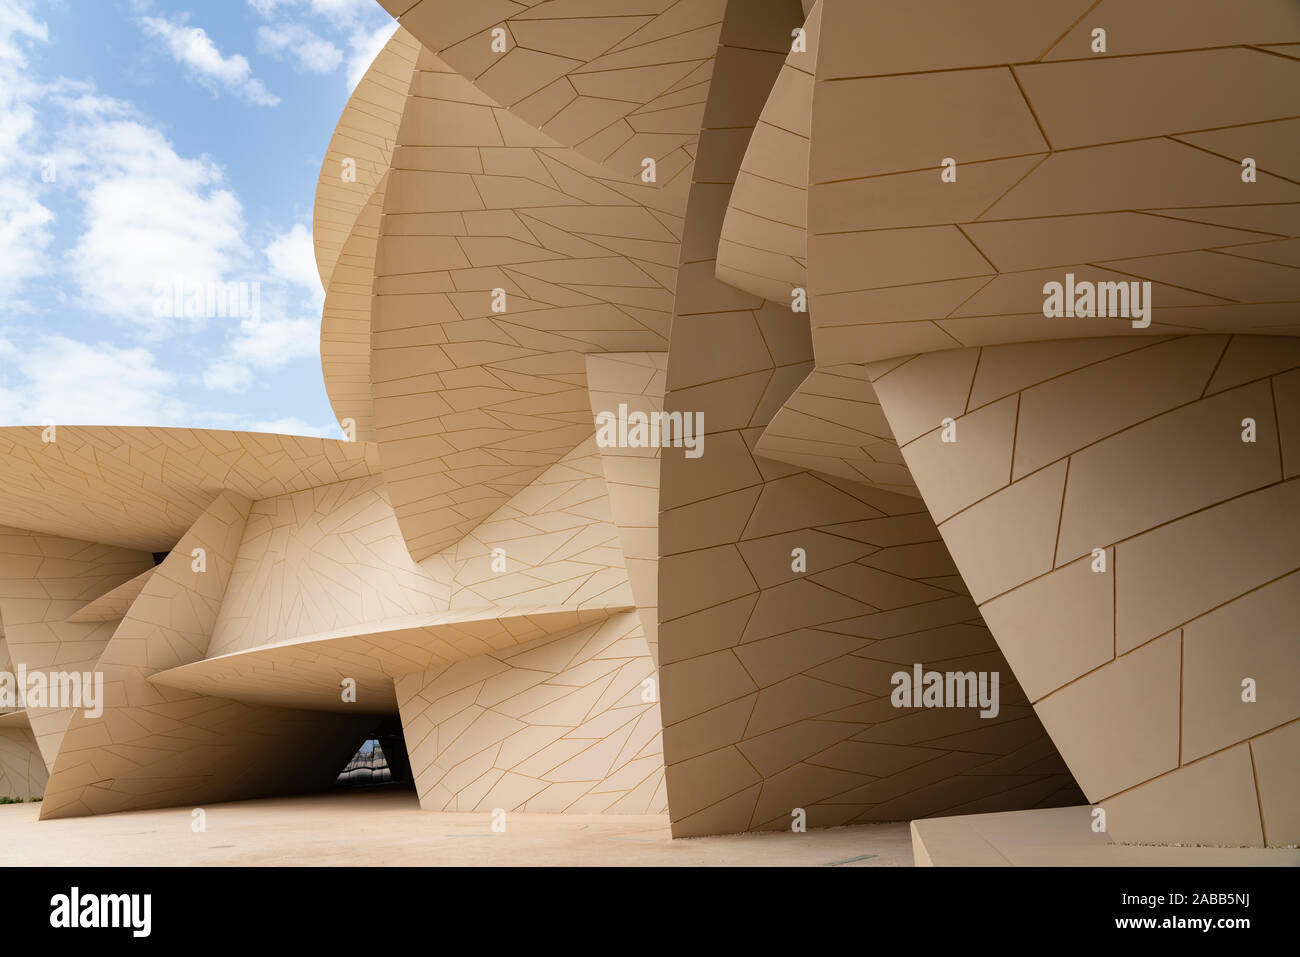 La moderna architettura del nuovo Museo Nazionale del Qatar a Doha, in Qatar, Medio Oriente Foto Stock